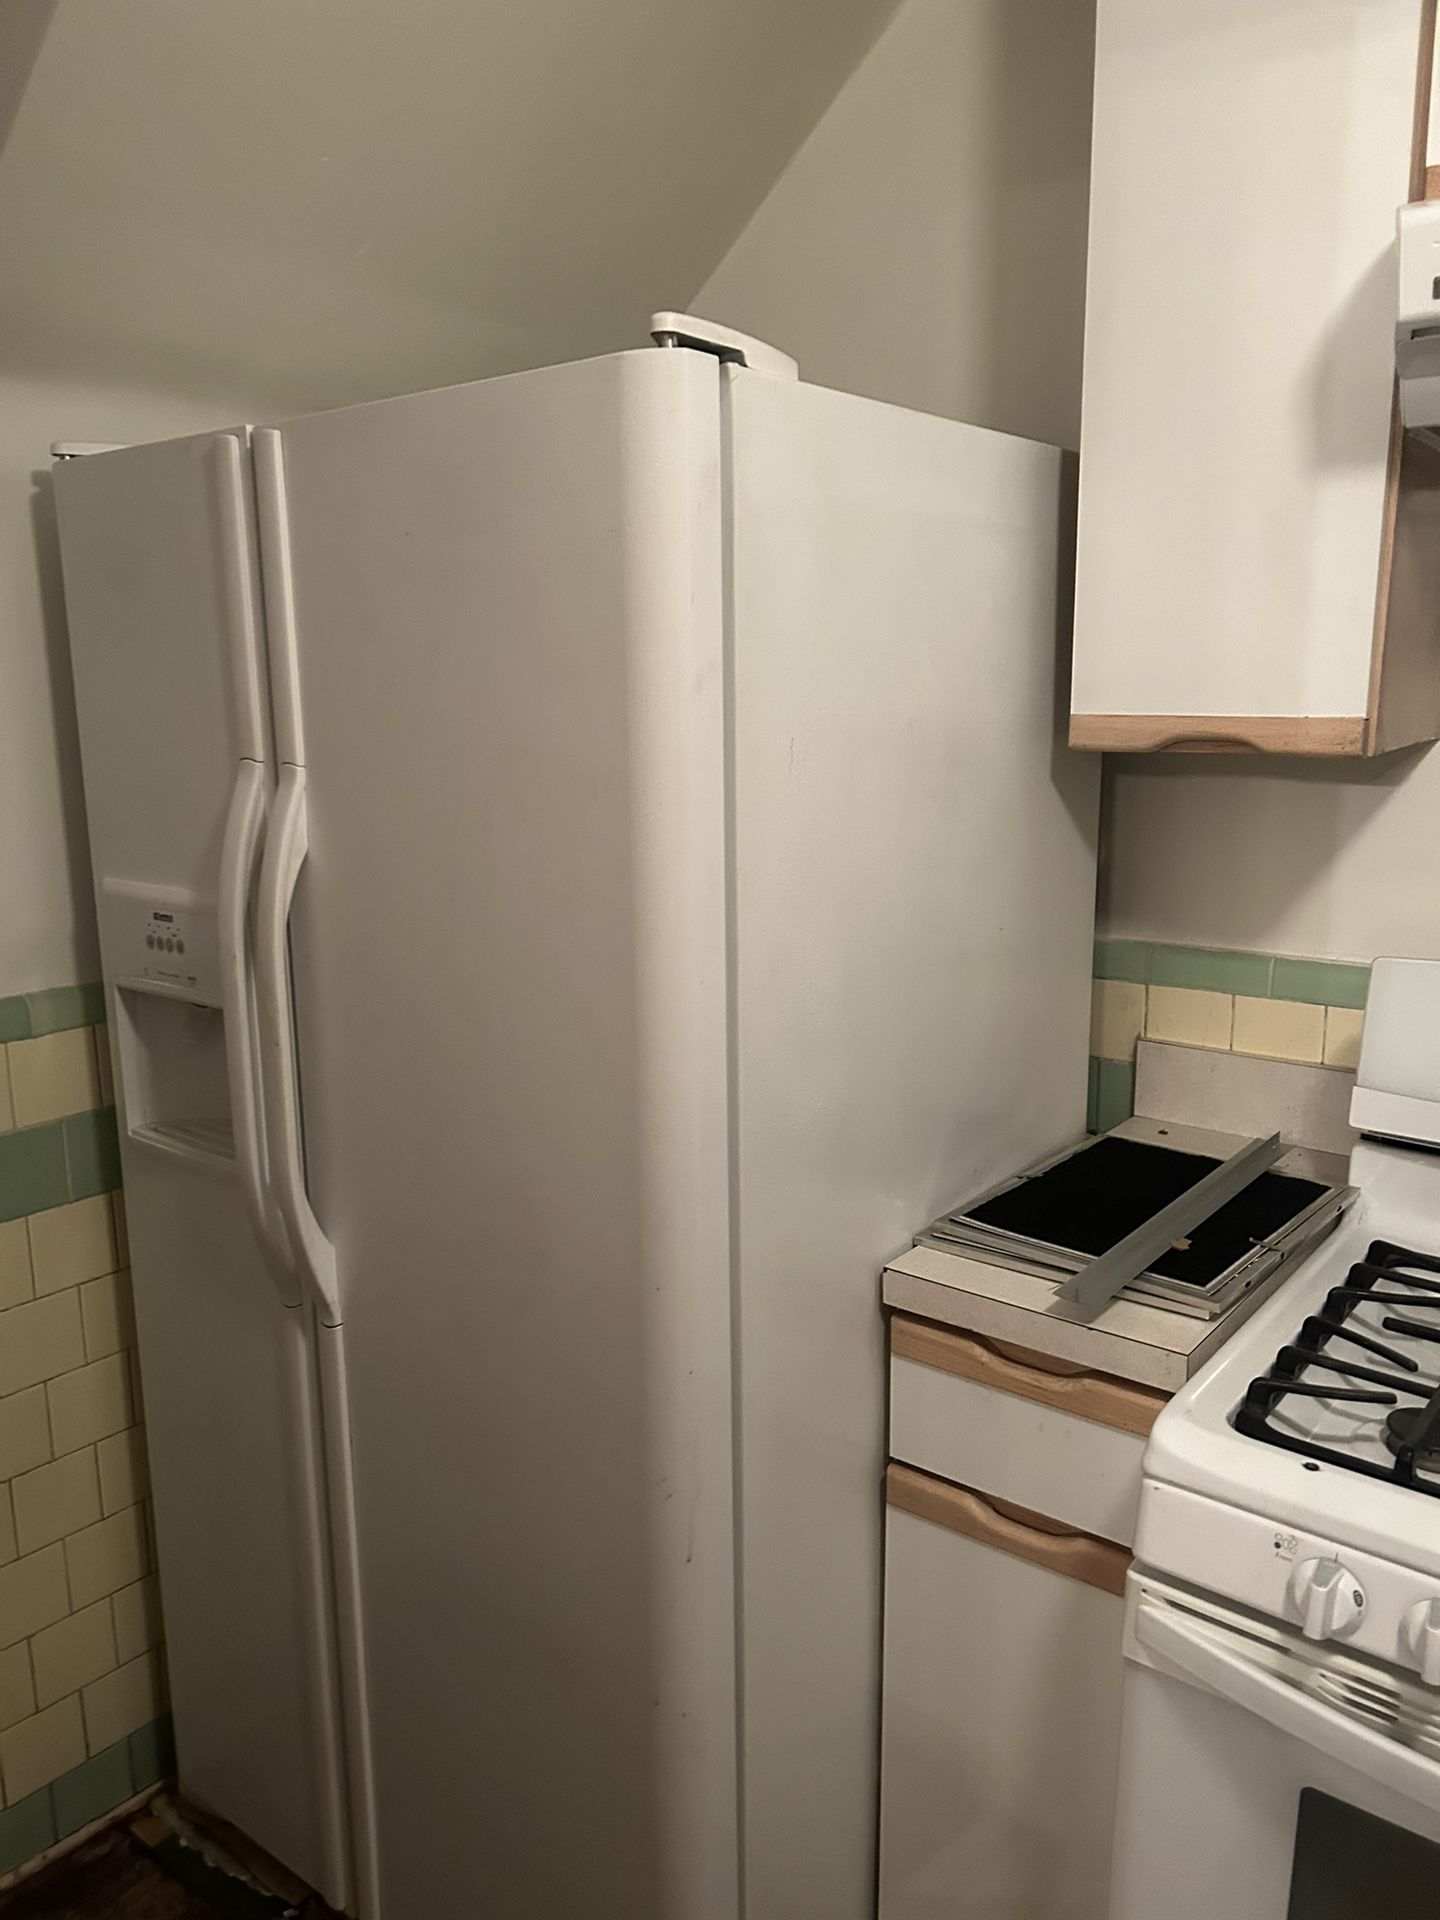 Stove Range Refrigerator Dishwasher 